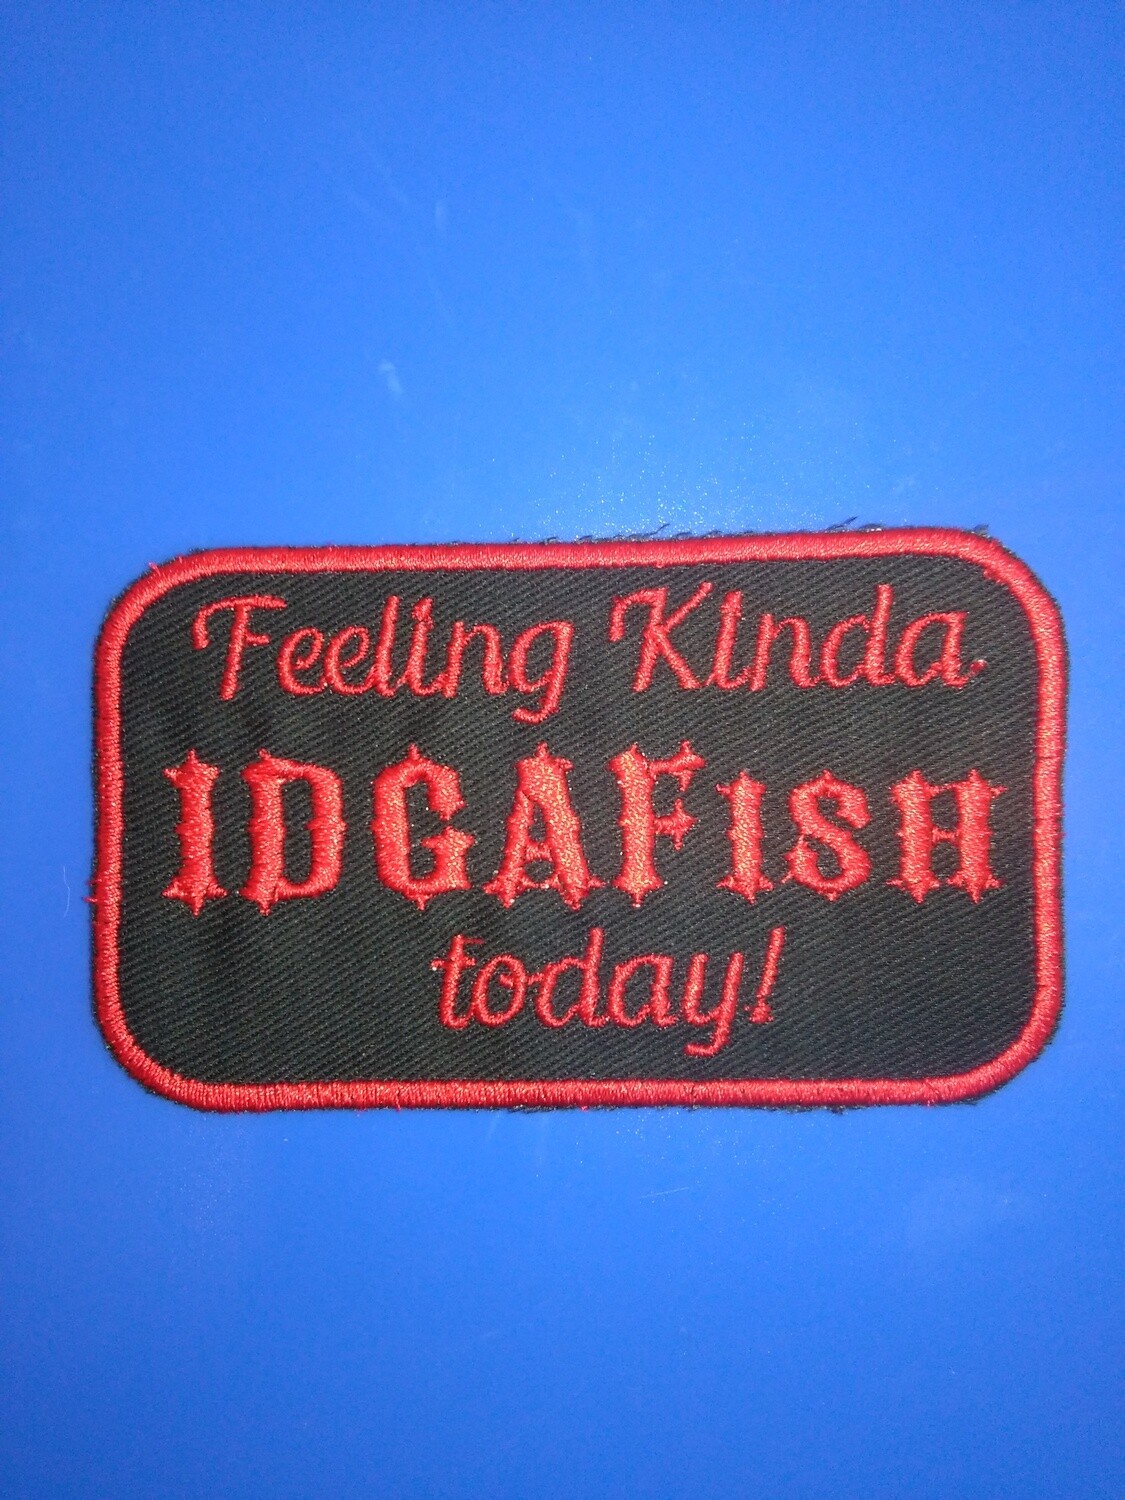 IDGAFish